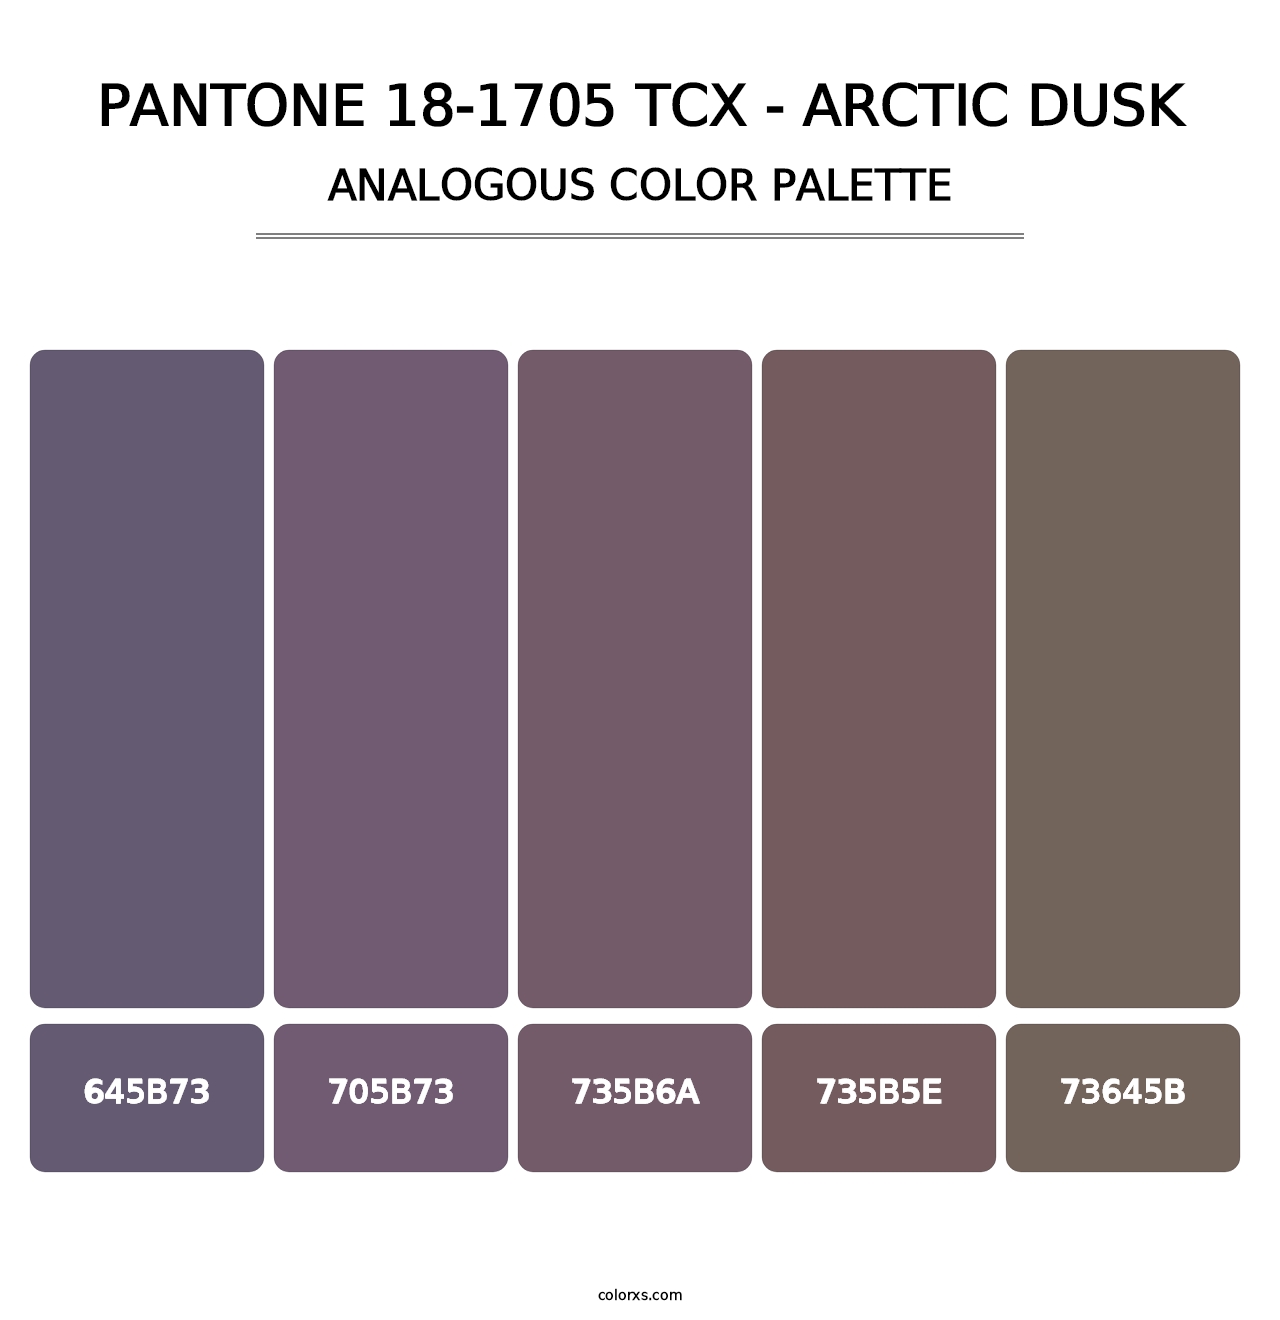 PANTONE 18-1705 TCX - Arctic Dusk - Analogous Color Palette